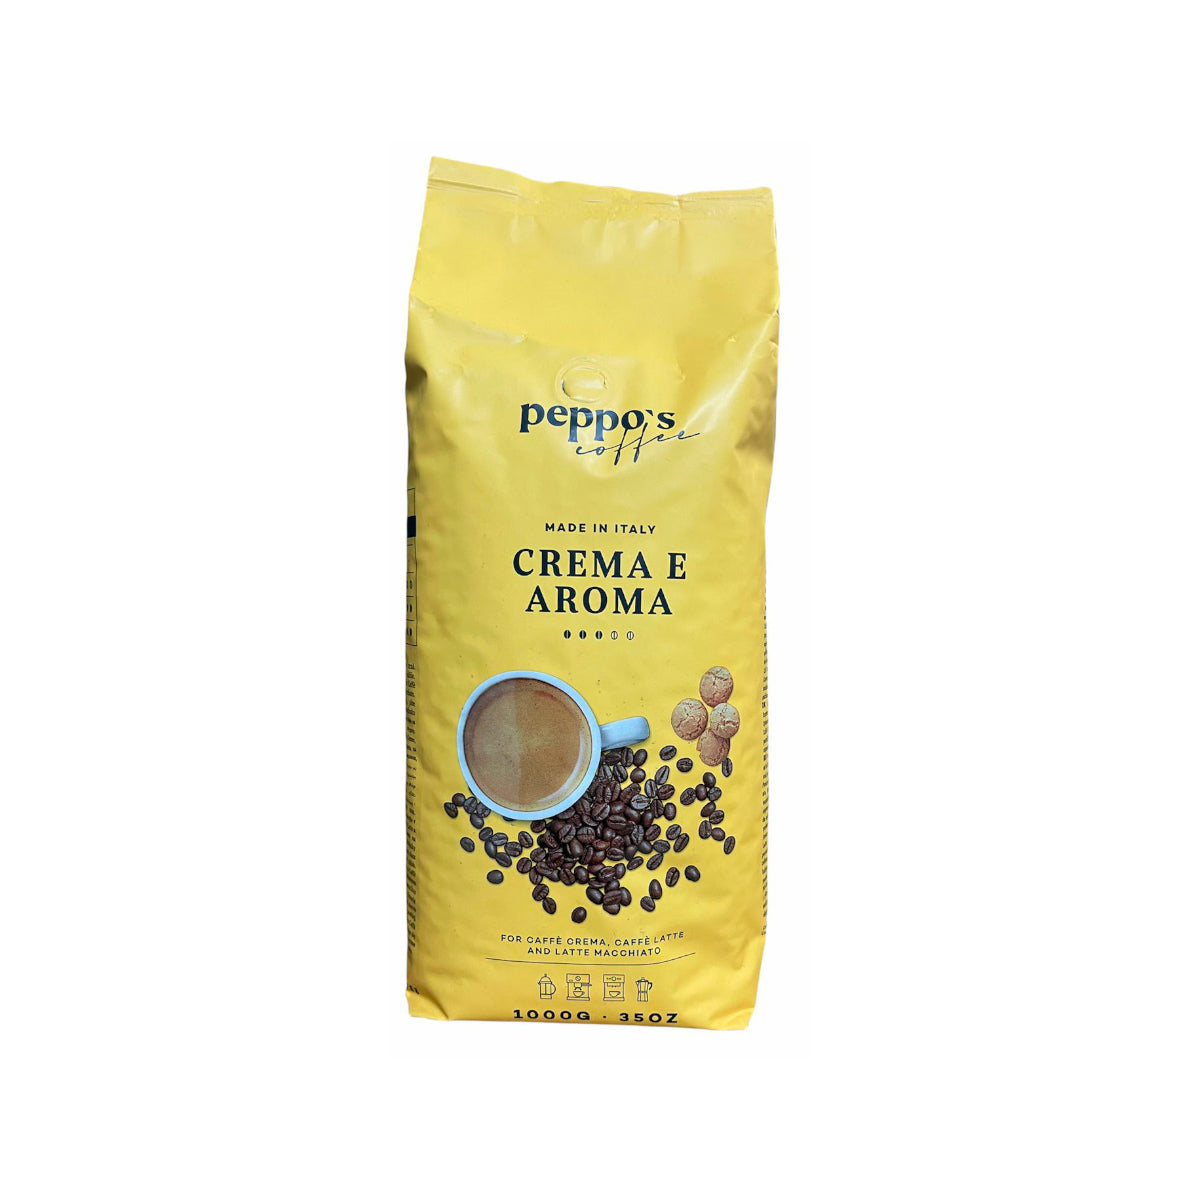 Peppo's Crema E Aroma 1kg